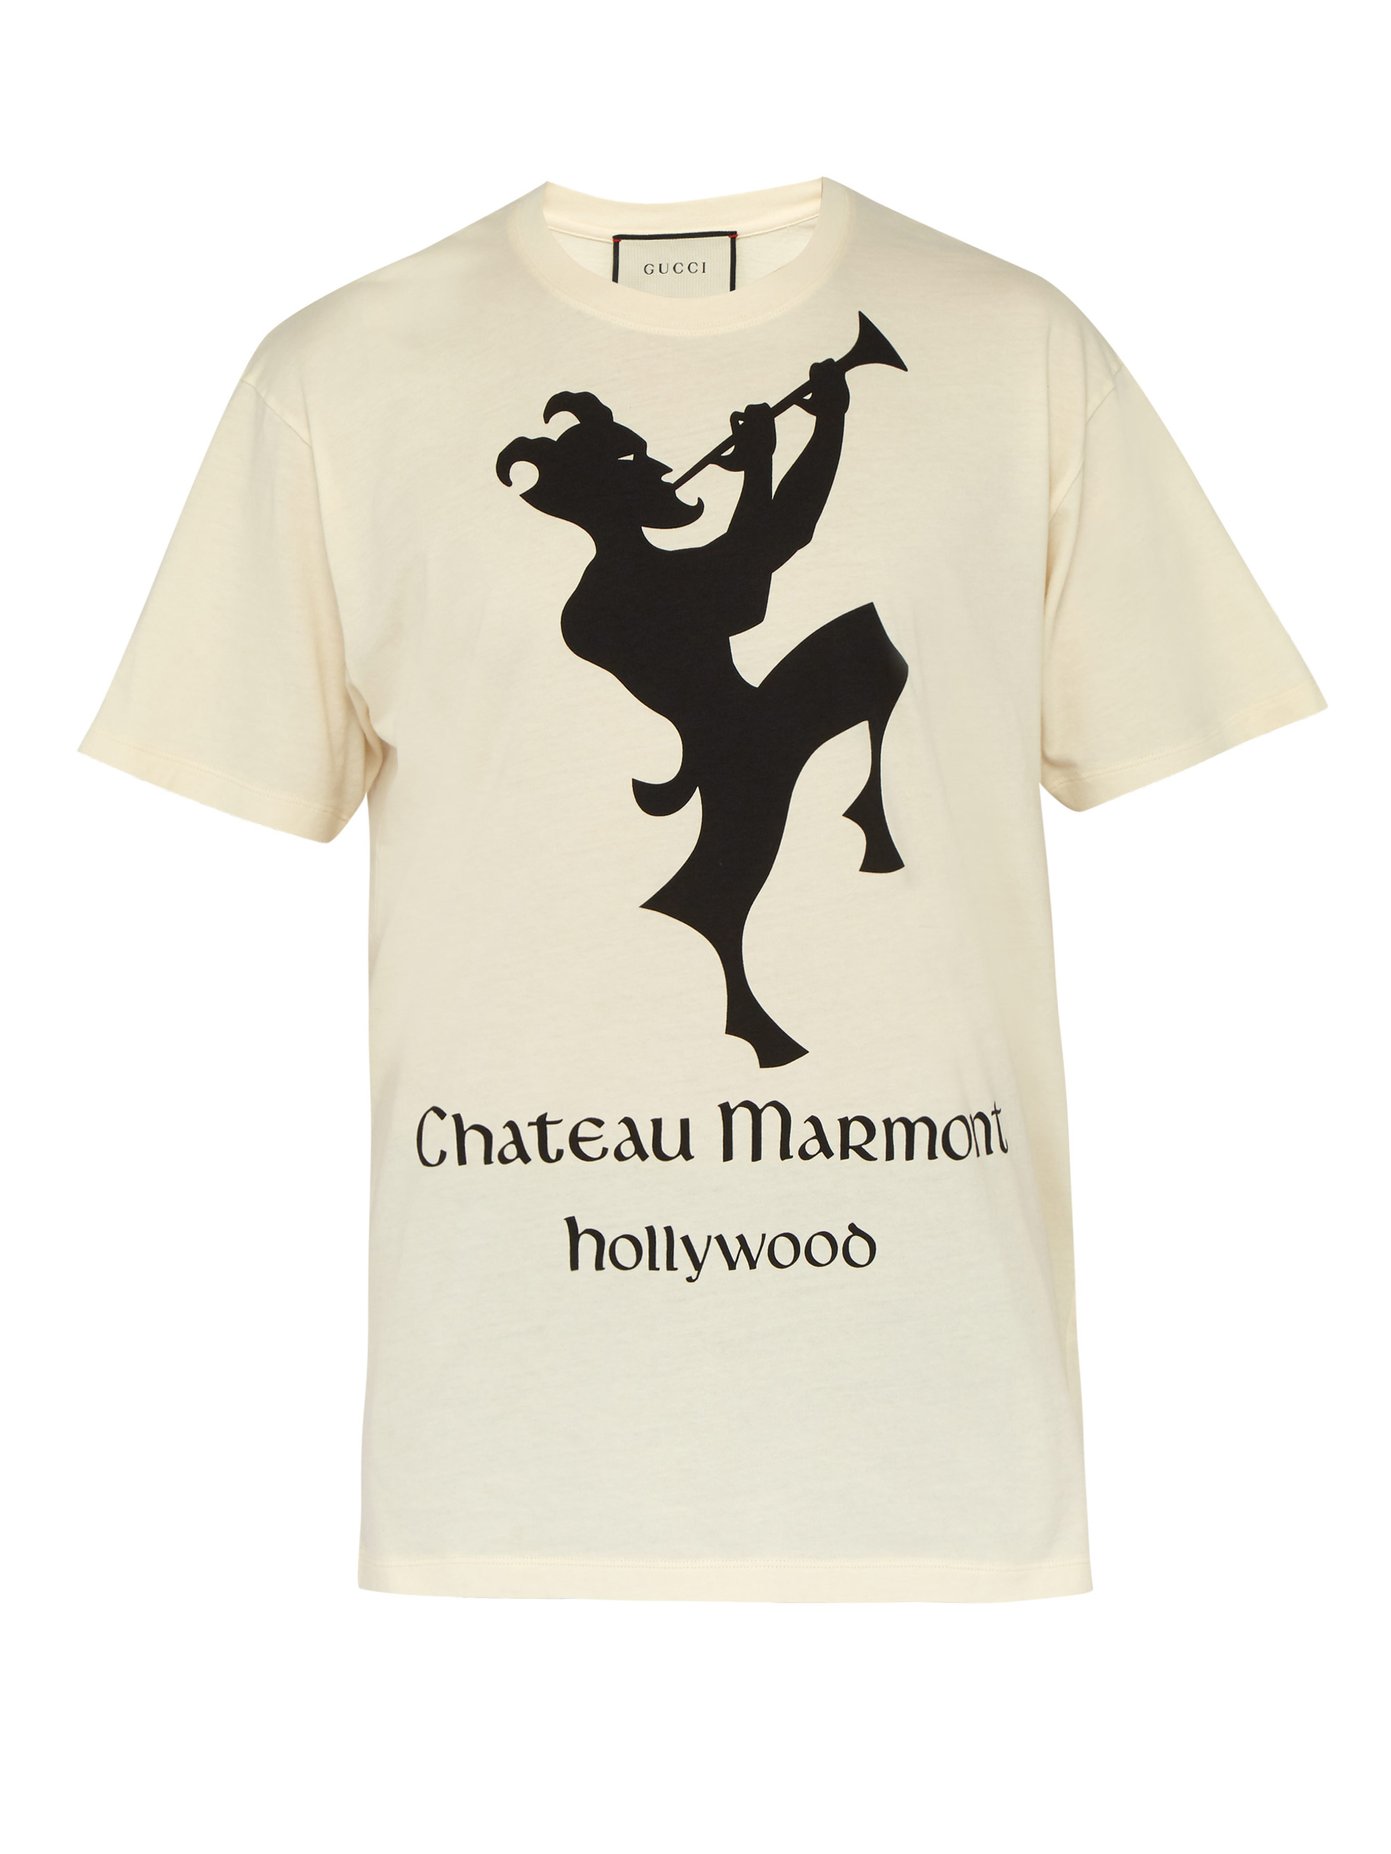 Chateau Marmont cotton T-shirt | Gucci 